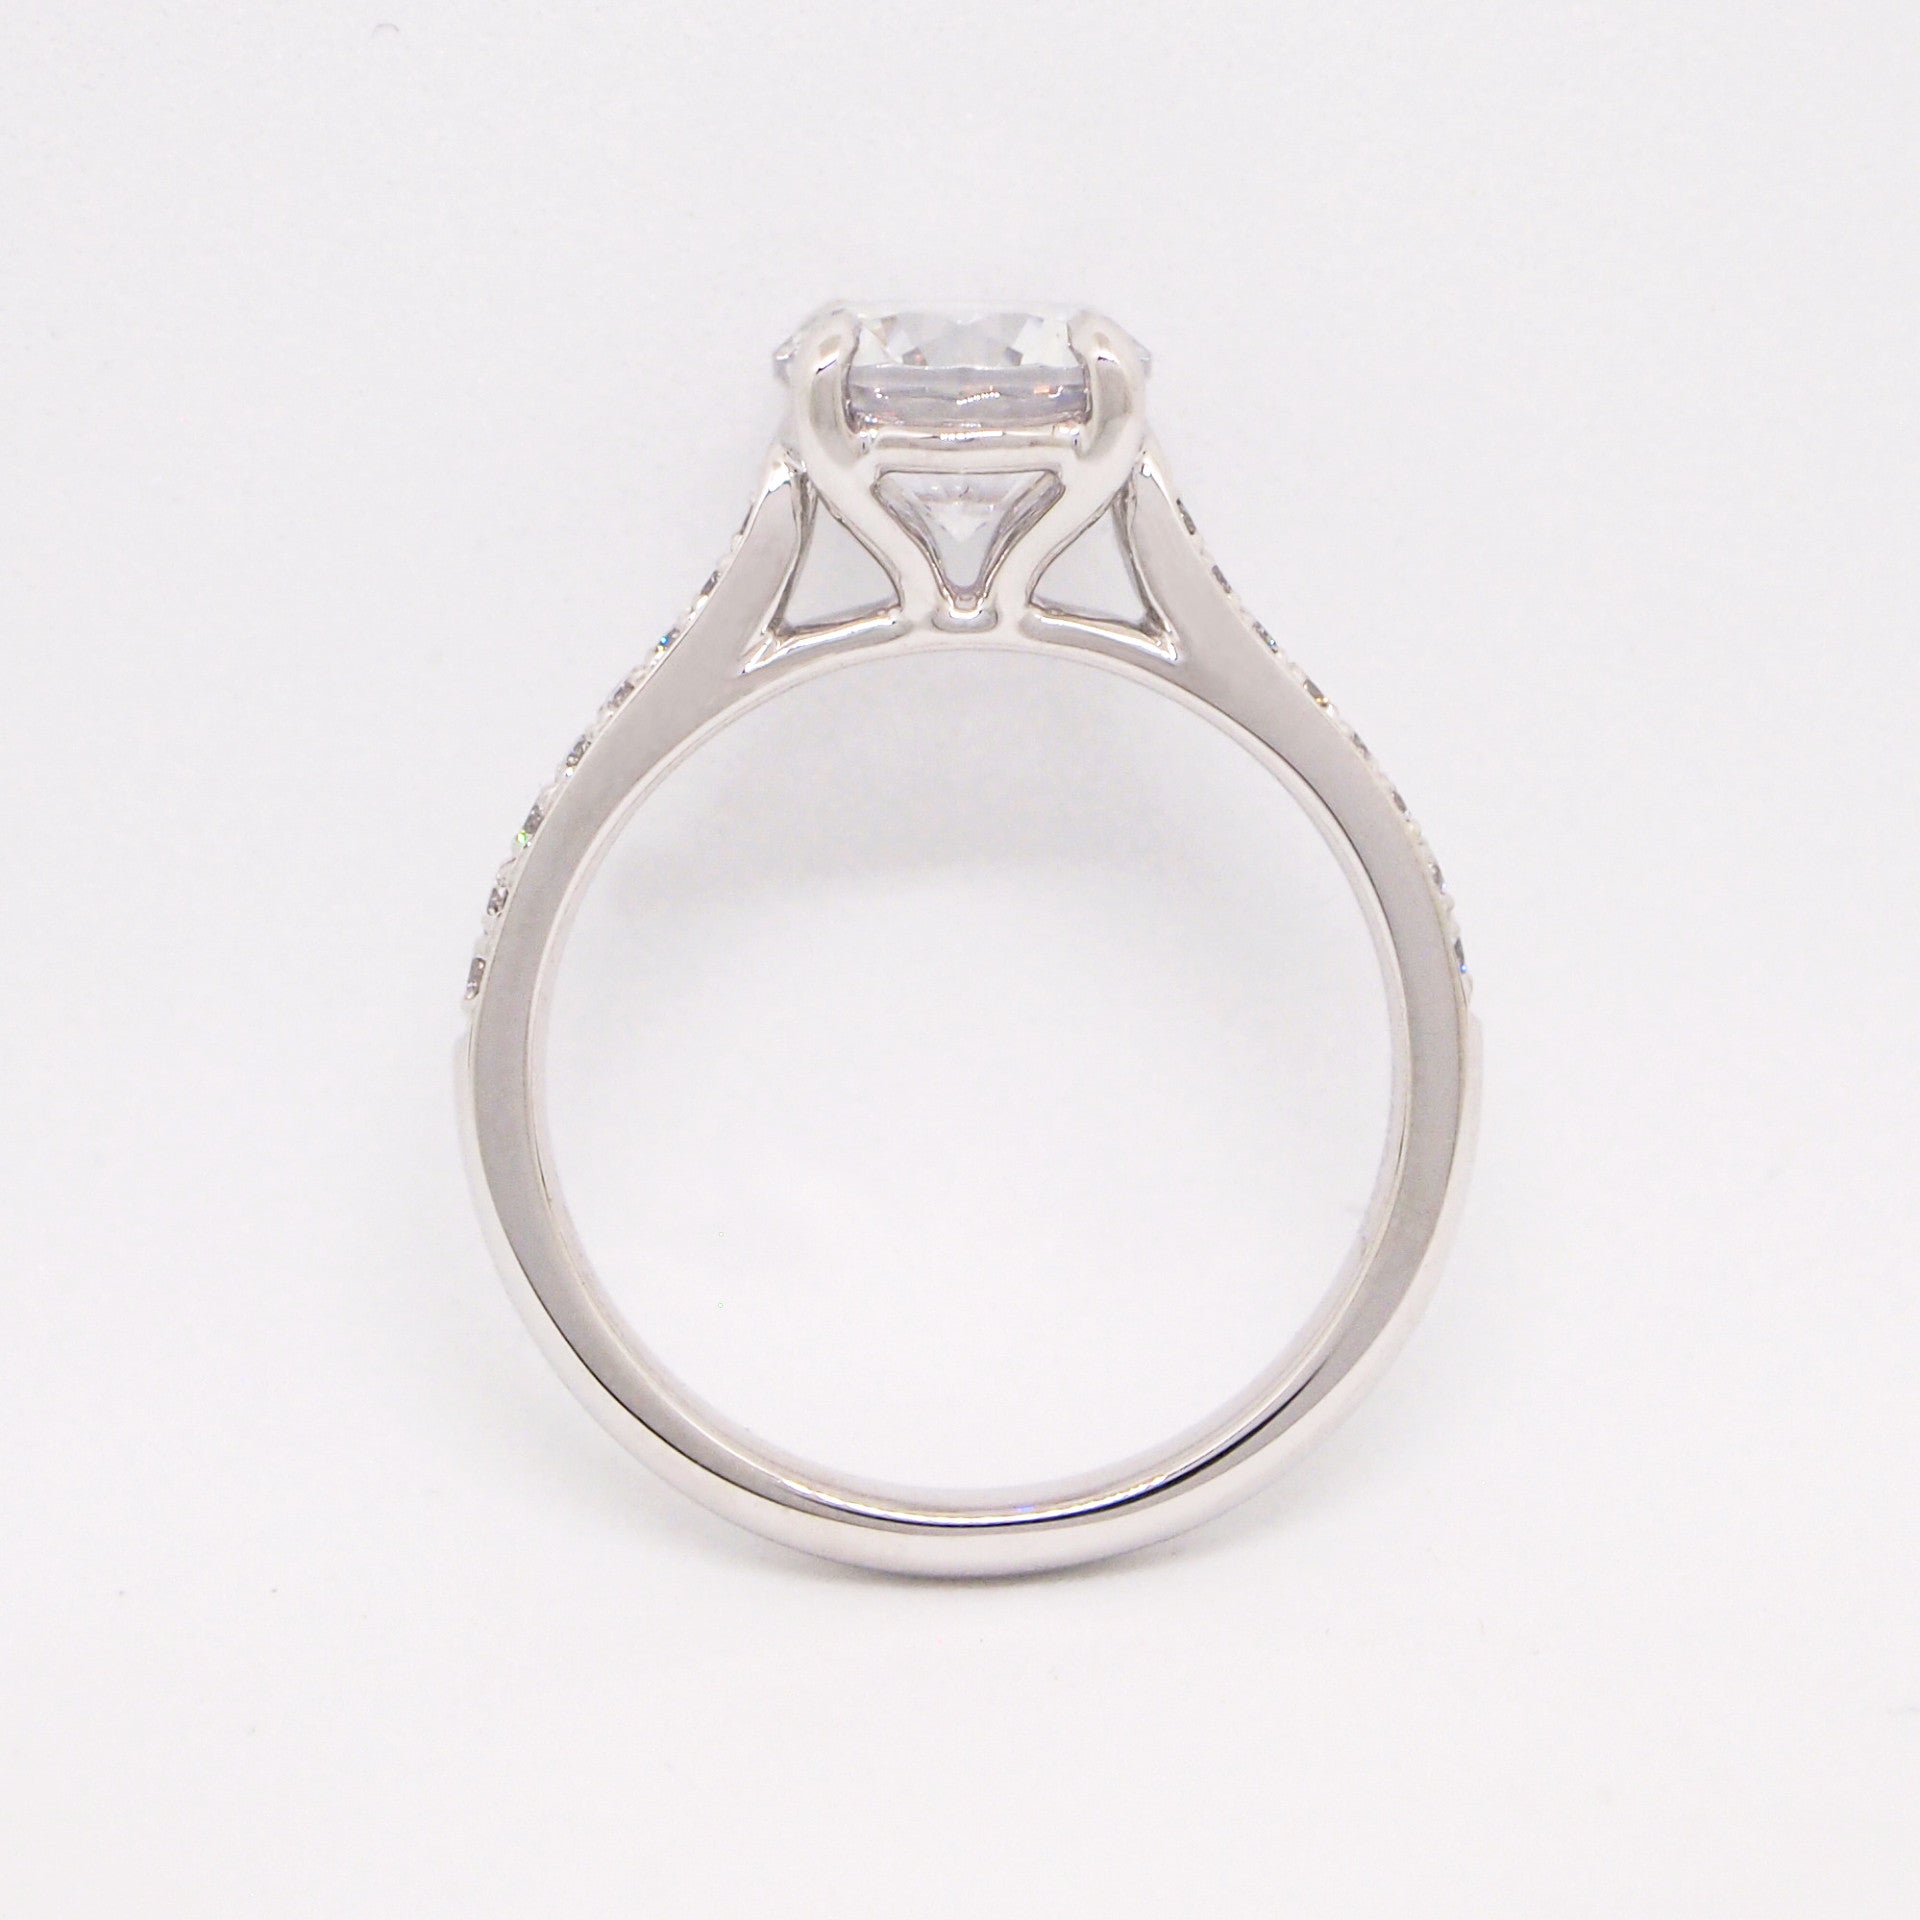 Platinum Diamond Solitaire Engagement Ring